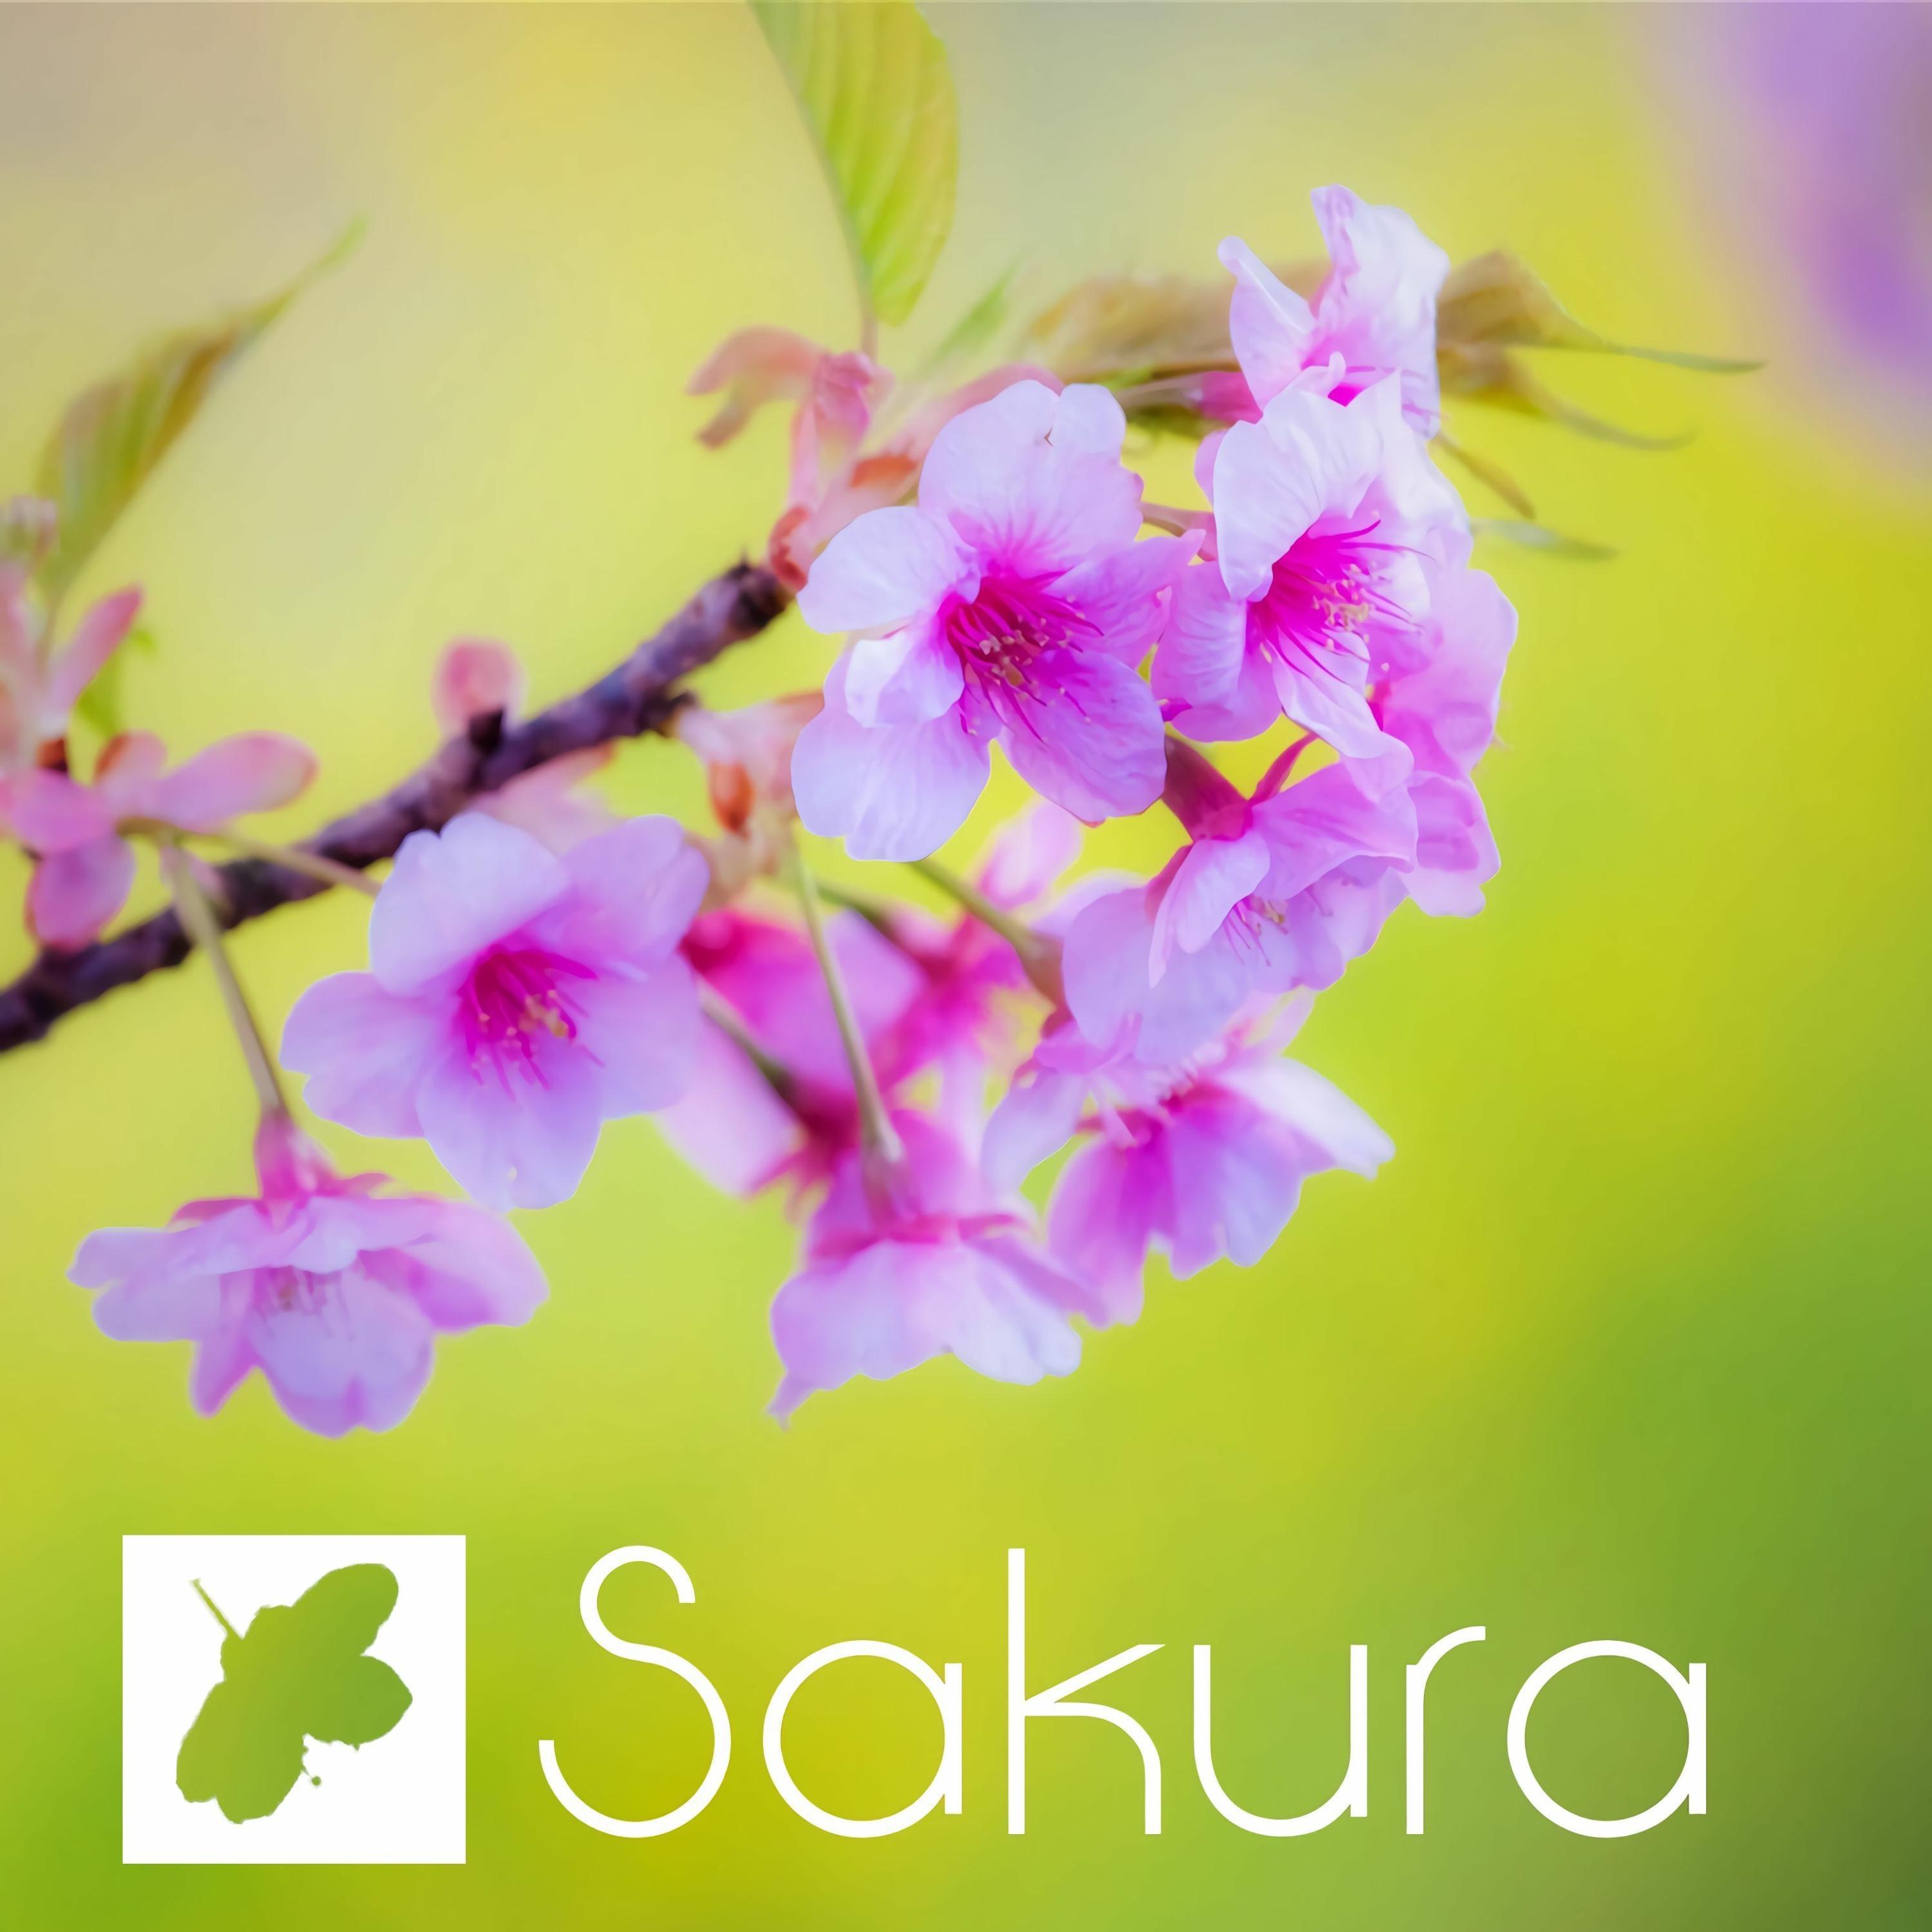 Oorora - Sakura.